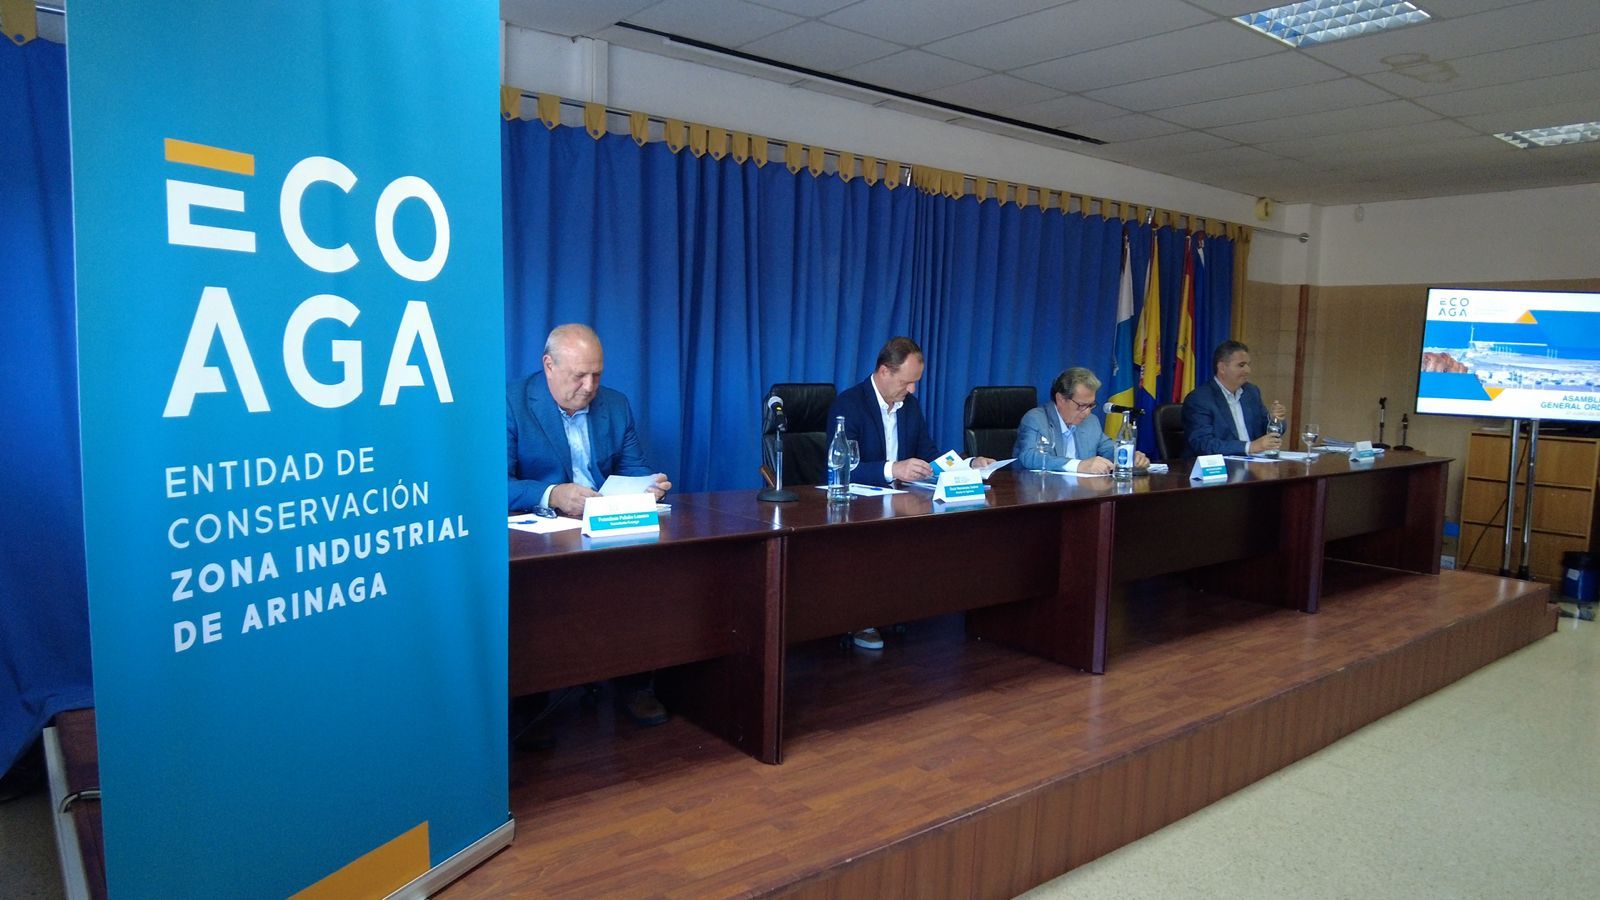 Asamblea General de La Entidad de Conservación de la Zona Industrial de Arinaga (Ecoaga)